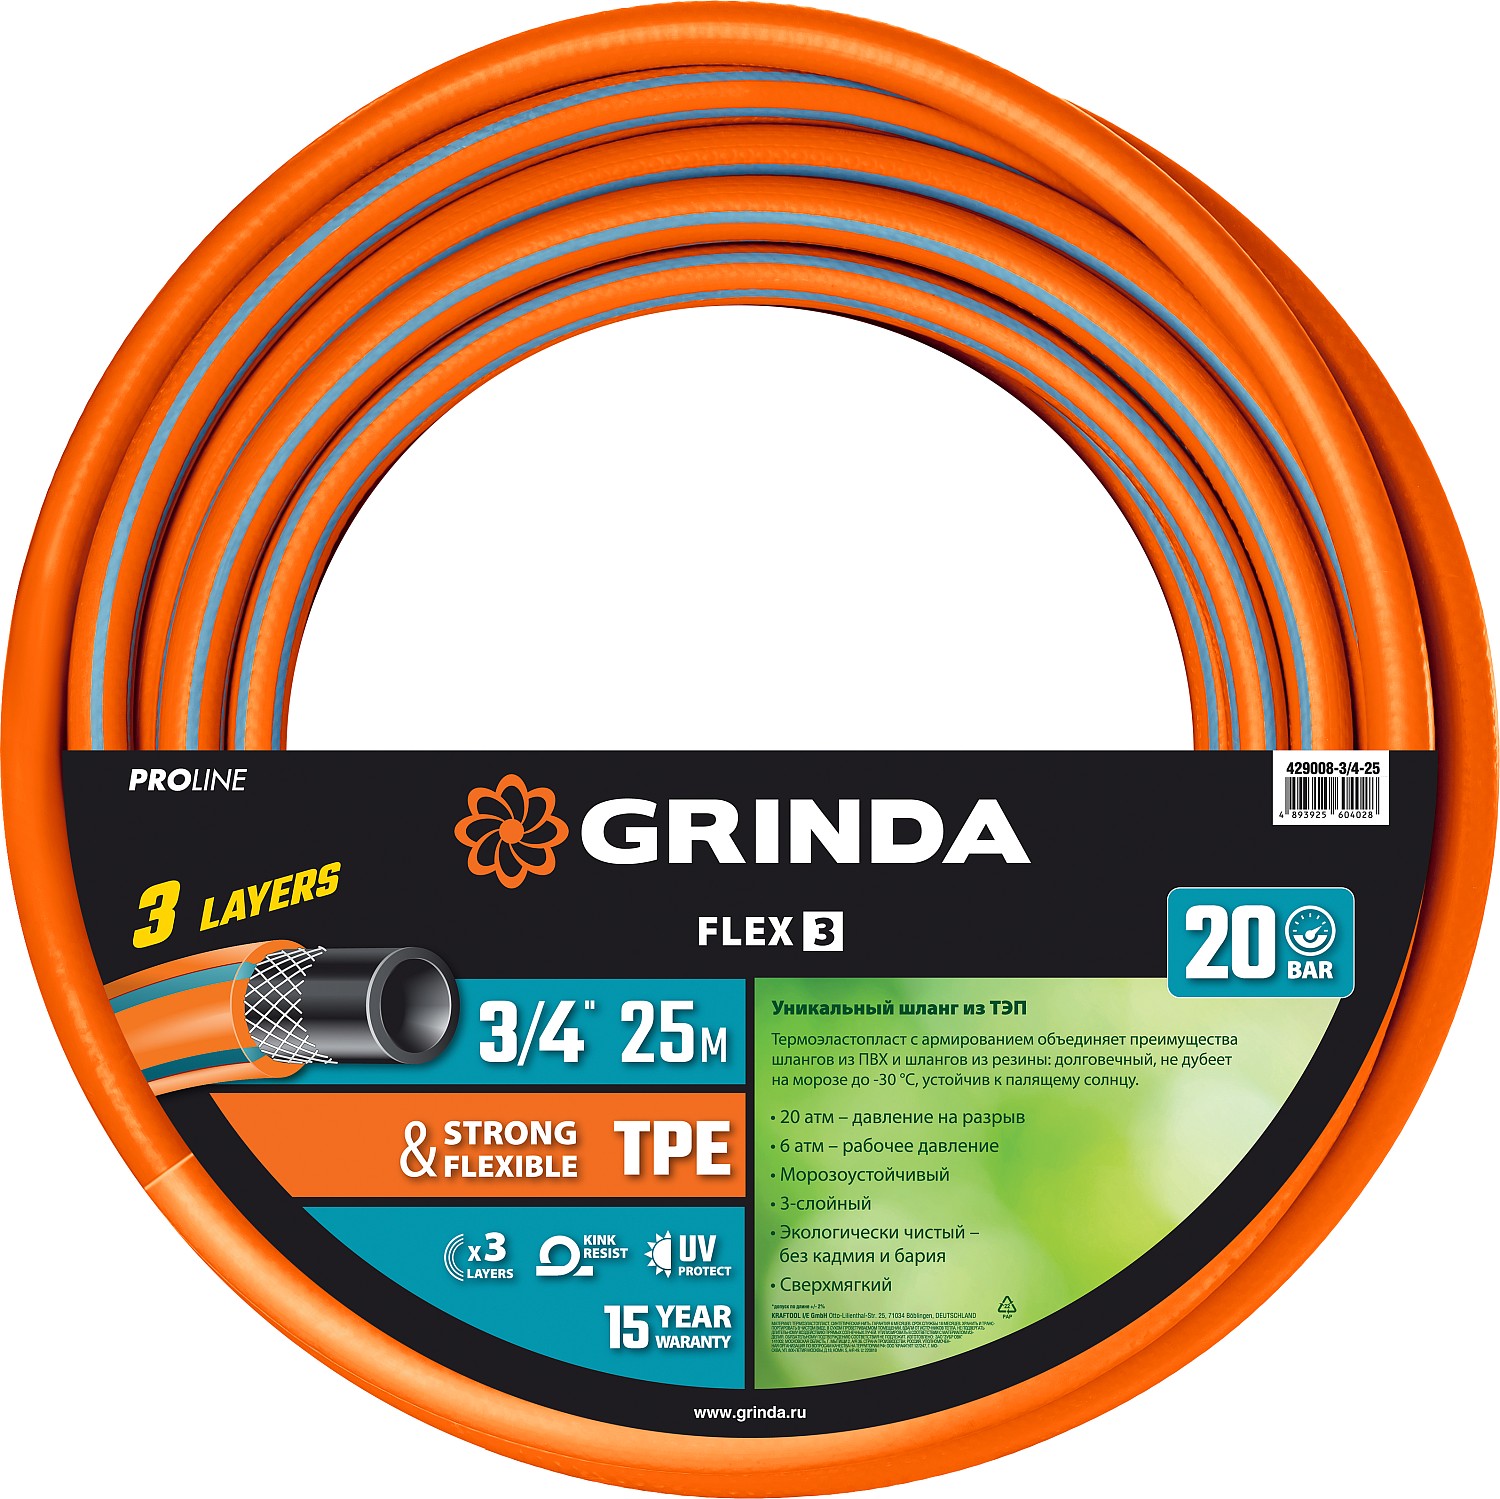 Шланг GRINDA PROLine FLEX 3, термоэластопласт, поливочный, армированный, d = 3/4" (19 мм), присоединительный размер = 3/4" (19мм), 25 м, 20 бар (429008-3/4-25)